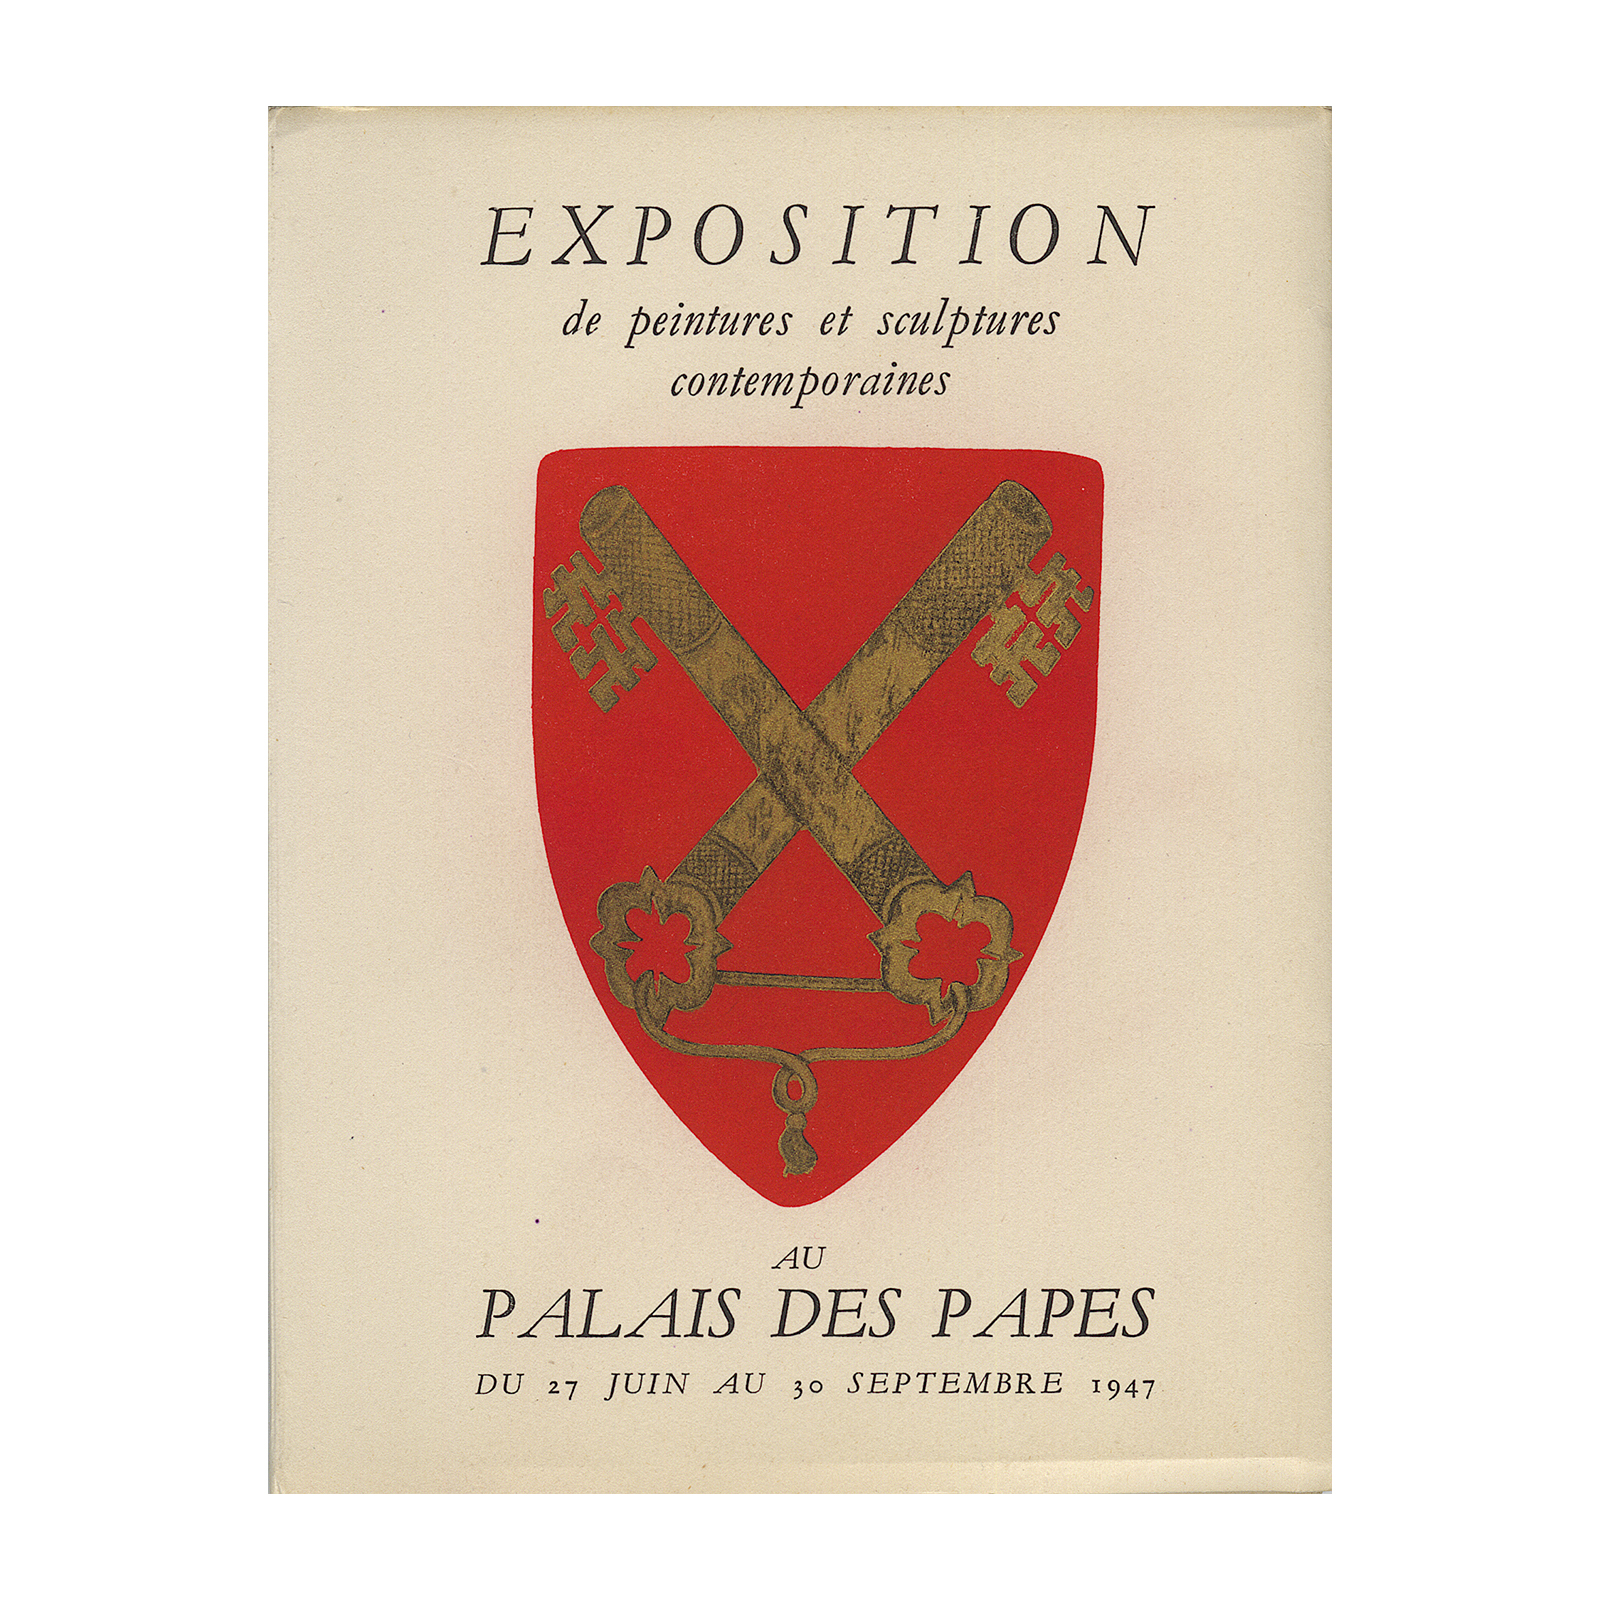 Cahiers d'Art -Palais des Papes 1947